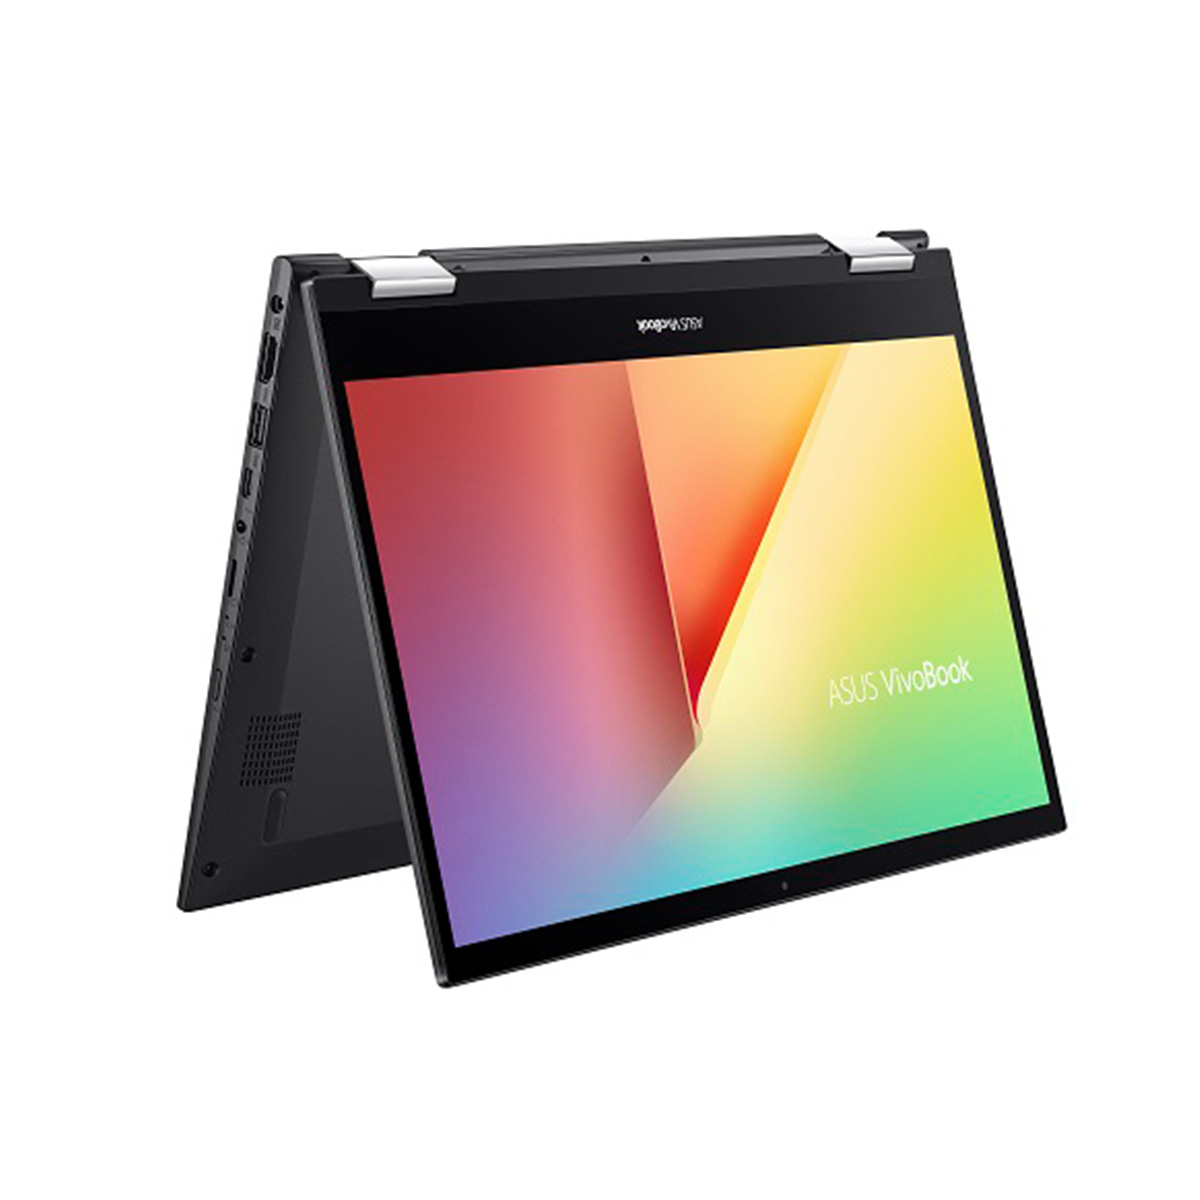 ［在庫限り］ノートパソコン14型 ASUS VivoBook Flip 14 Corei5/メモリ8GB/SSD512GB/Win10/WPS office付